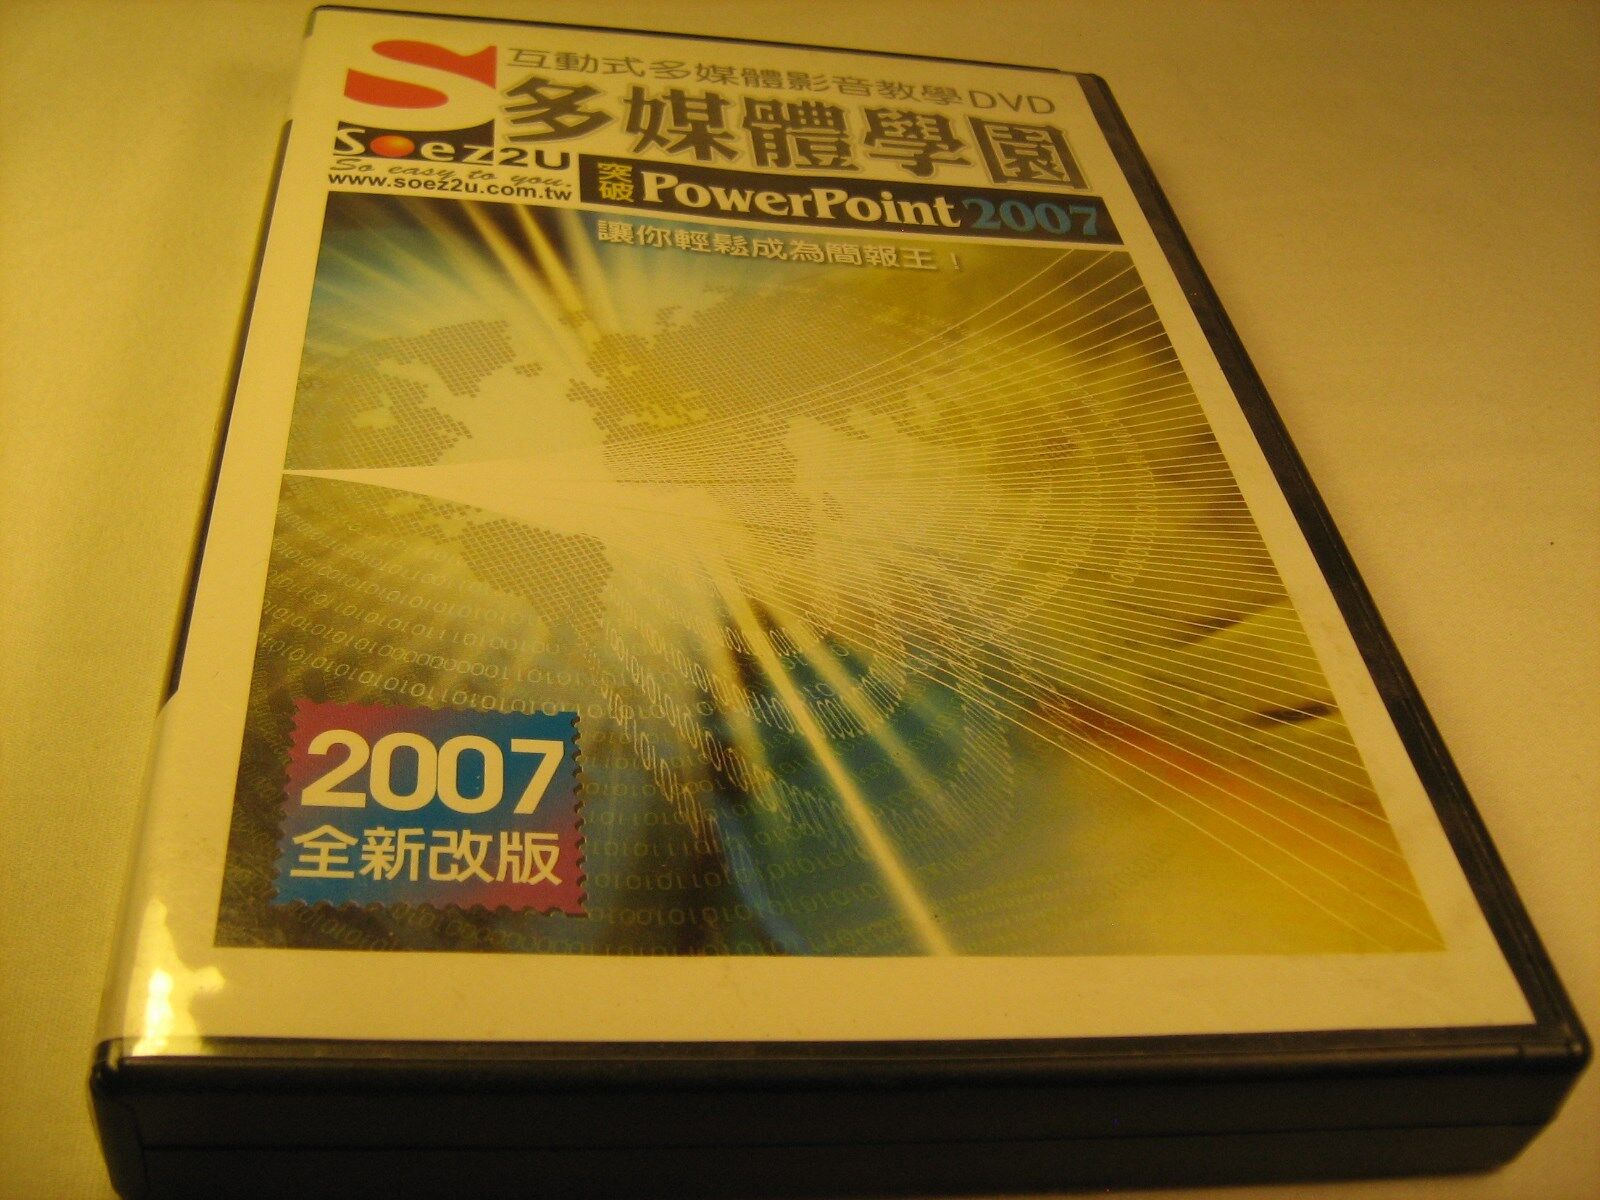 POWERPOINT 2007 soez2u (Chinese? Japanese?) Windows 98/me/2000/XP [Y113A] Popularne wybuchowe kupowanie